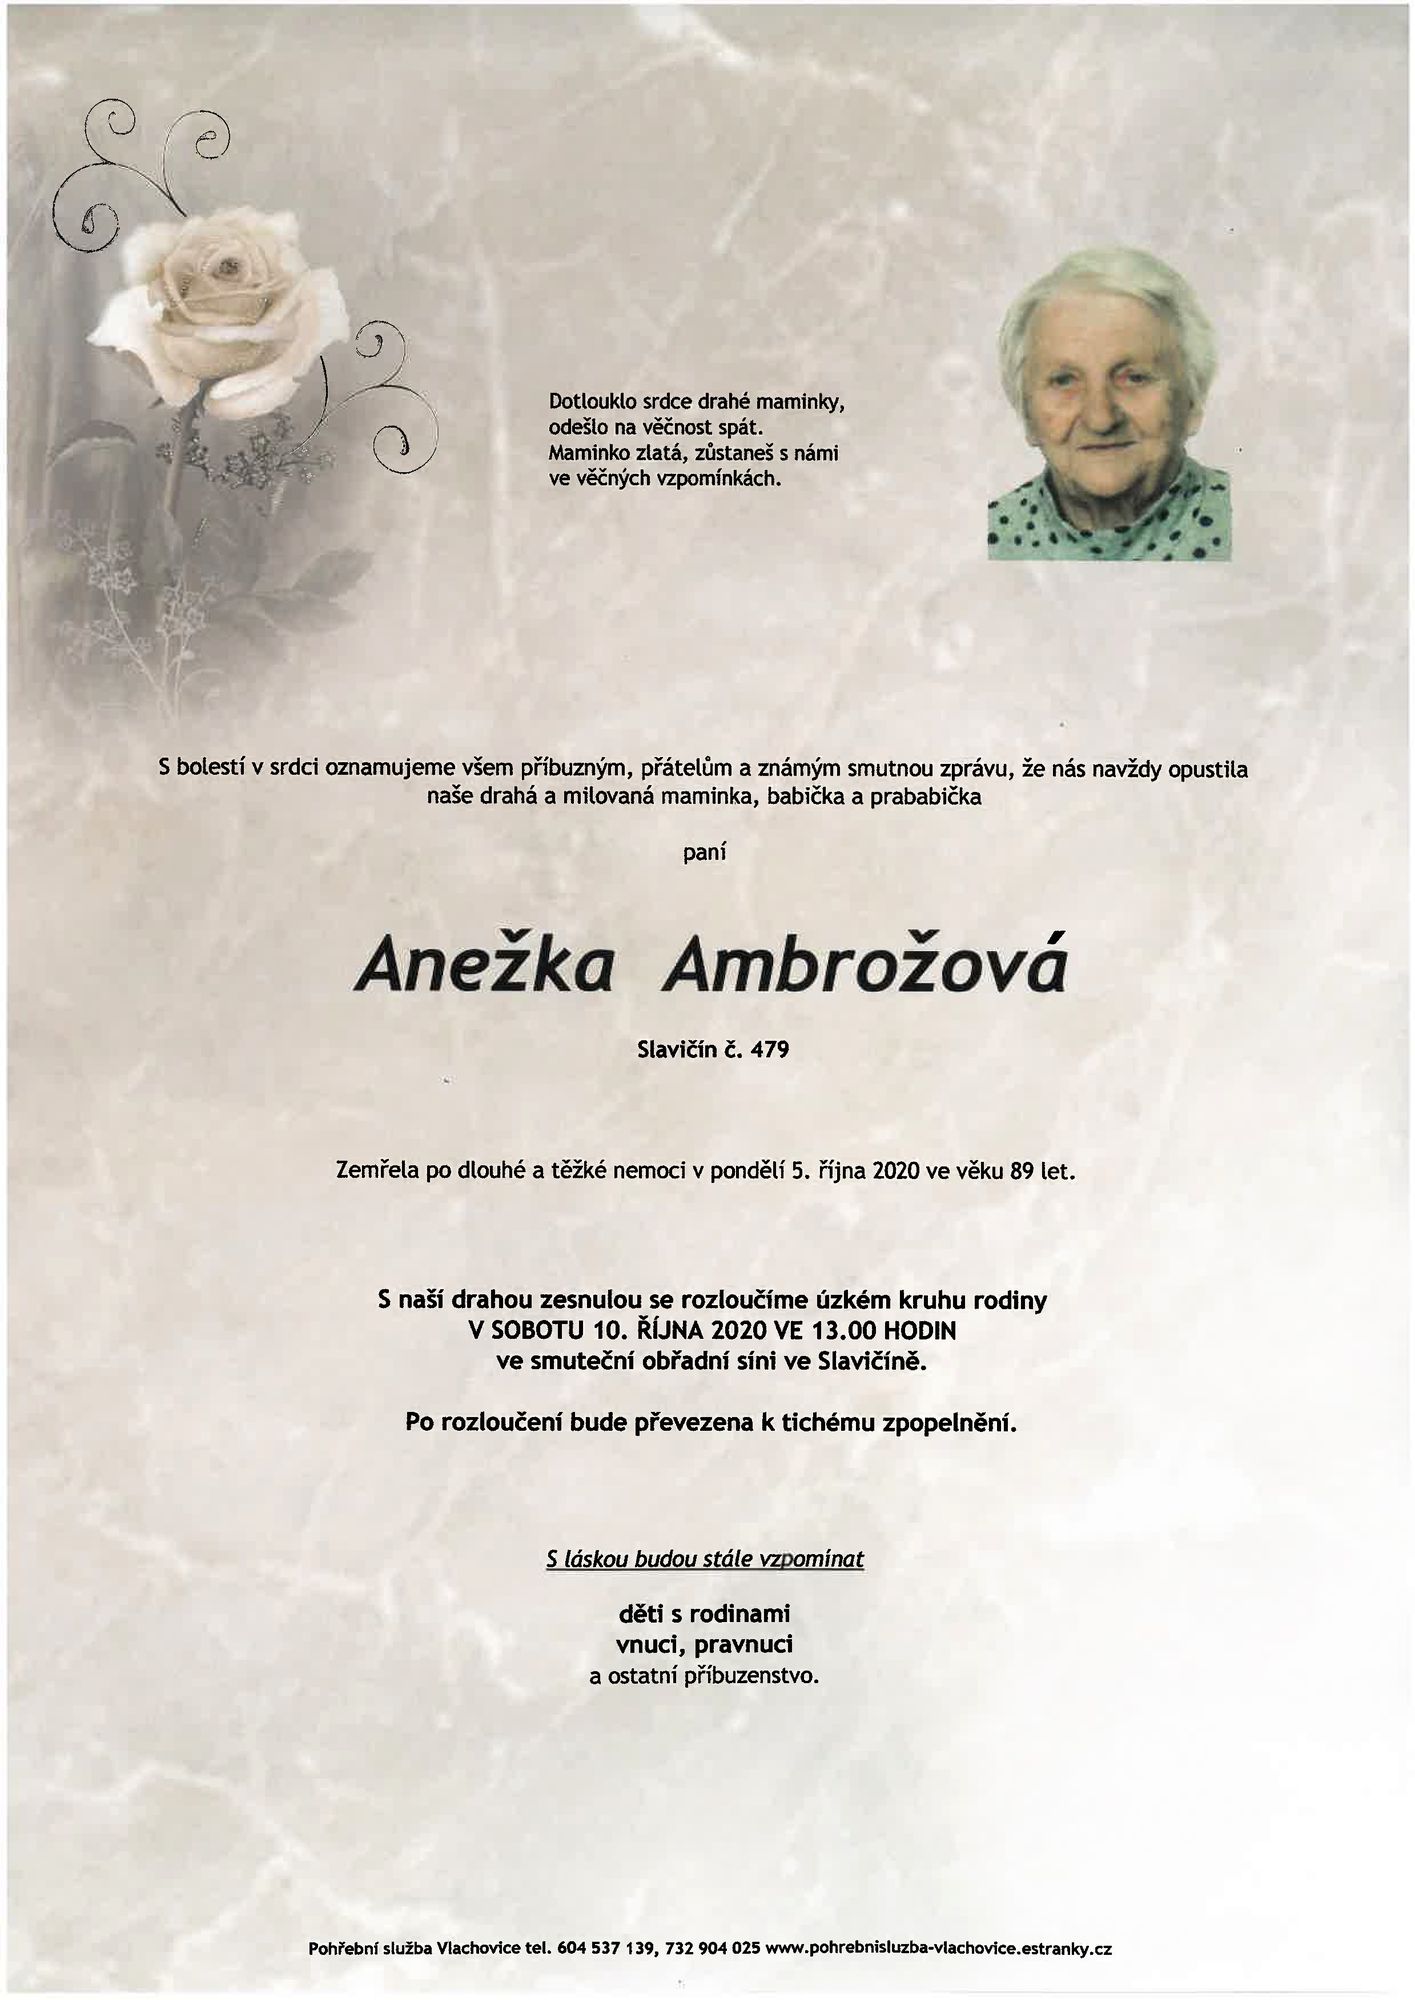 Anežka Ambrožová